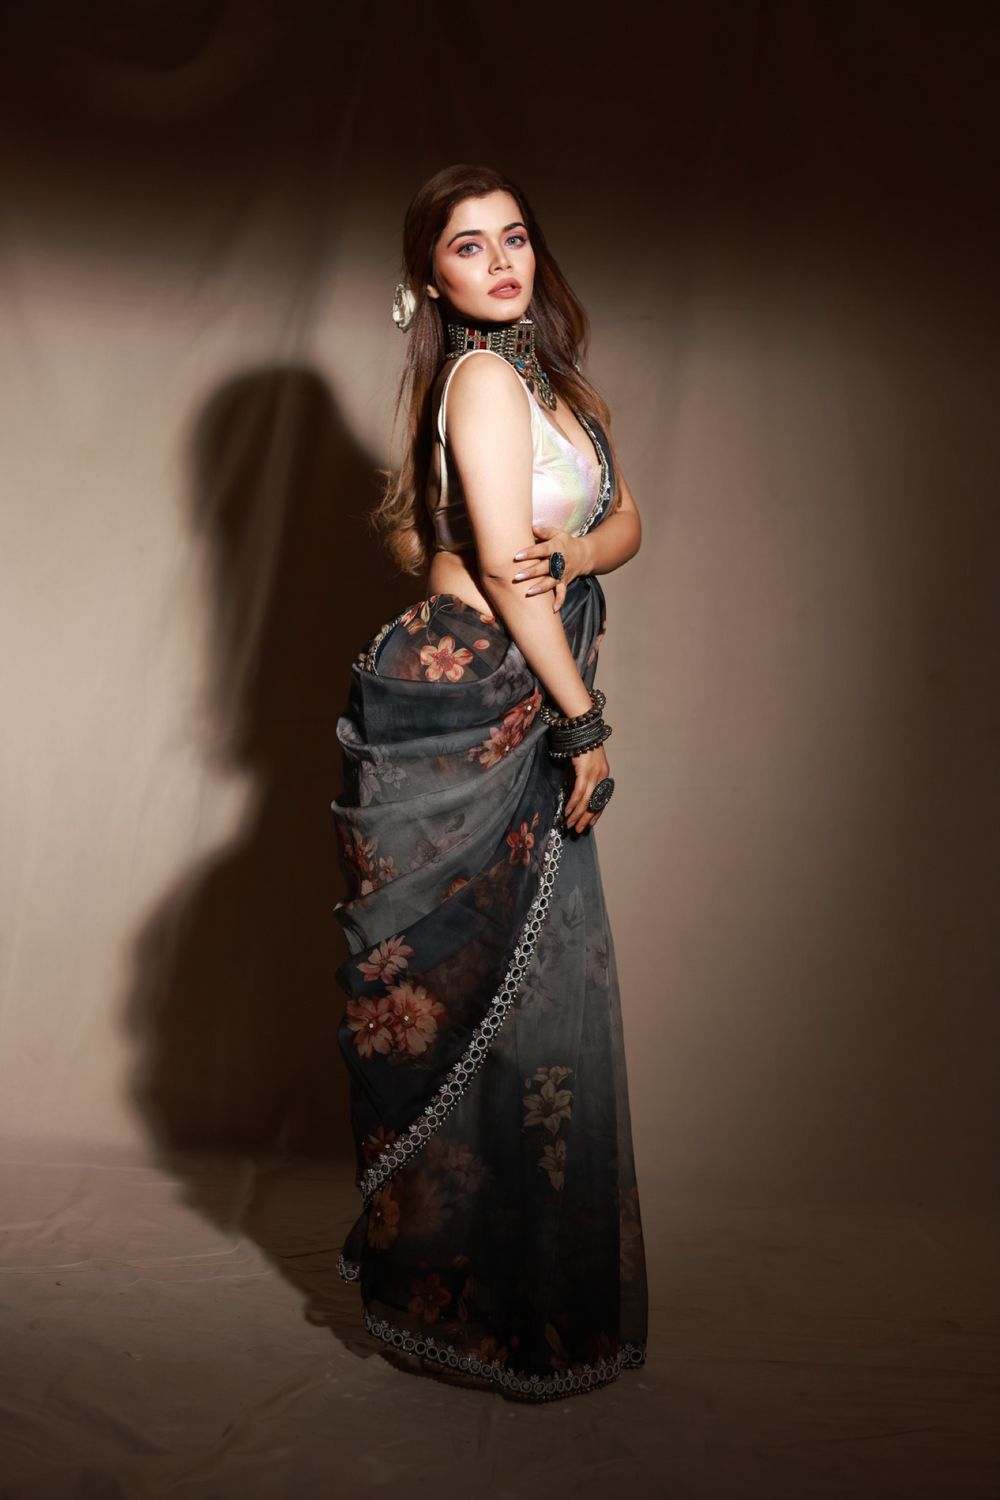 Photo By Calistta Label By Priyanshi Mahesh - Bridal Wear